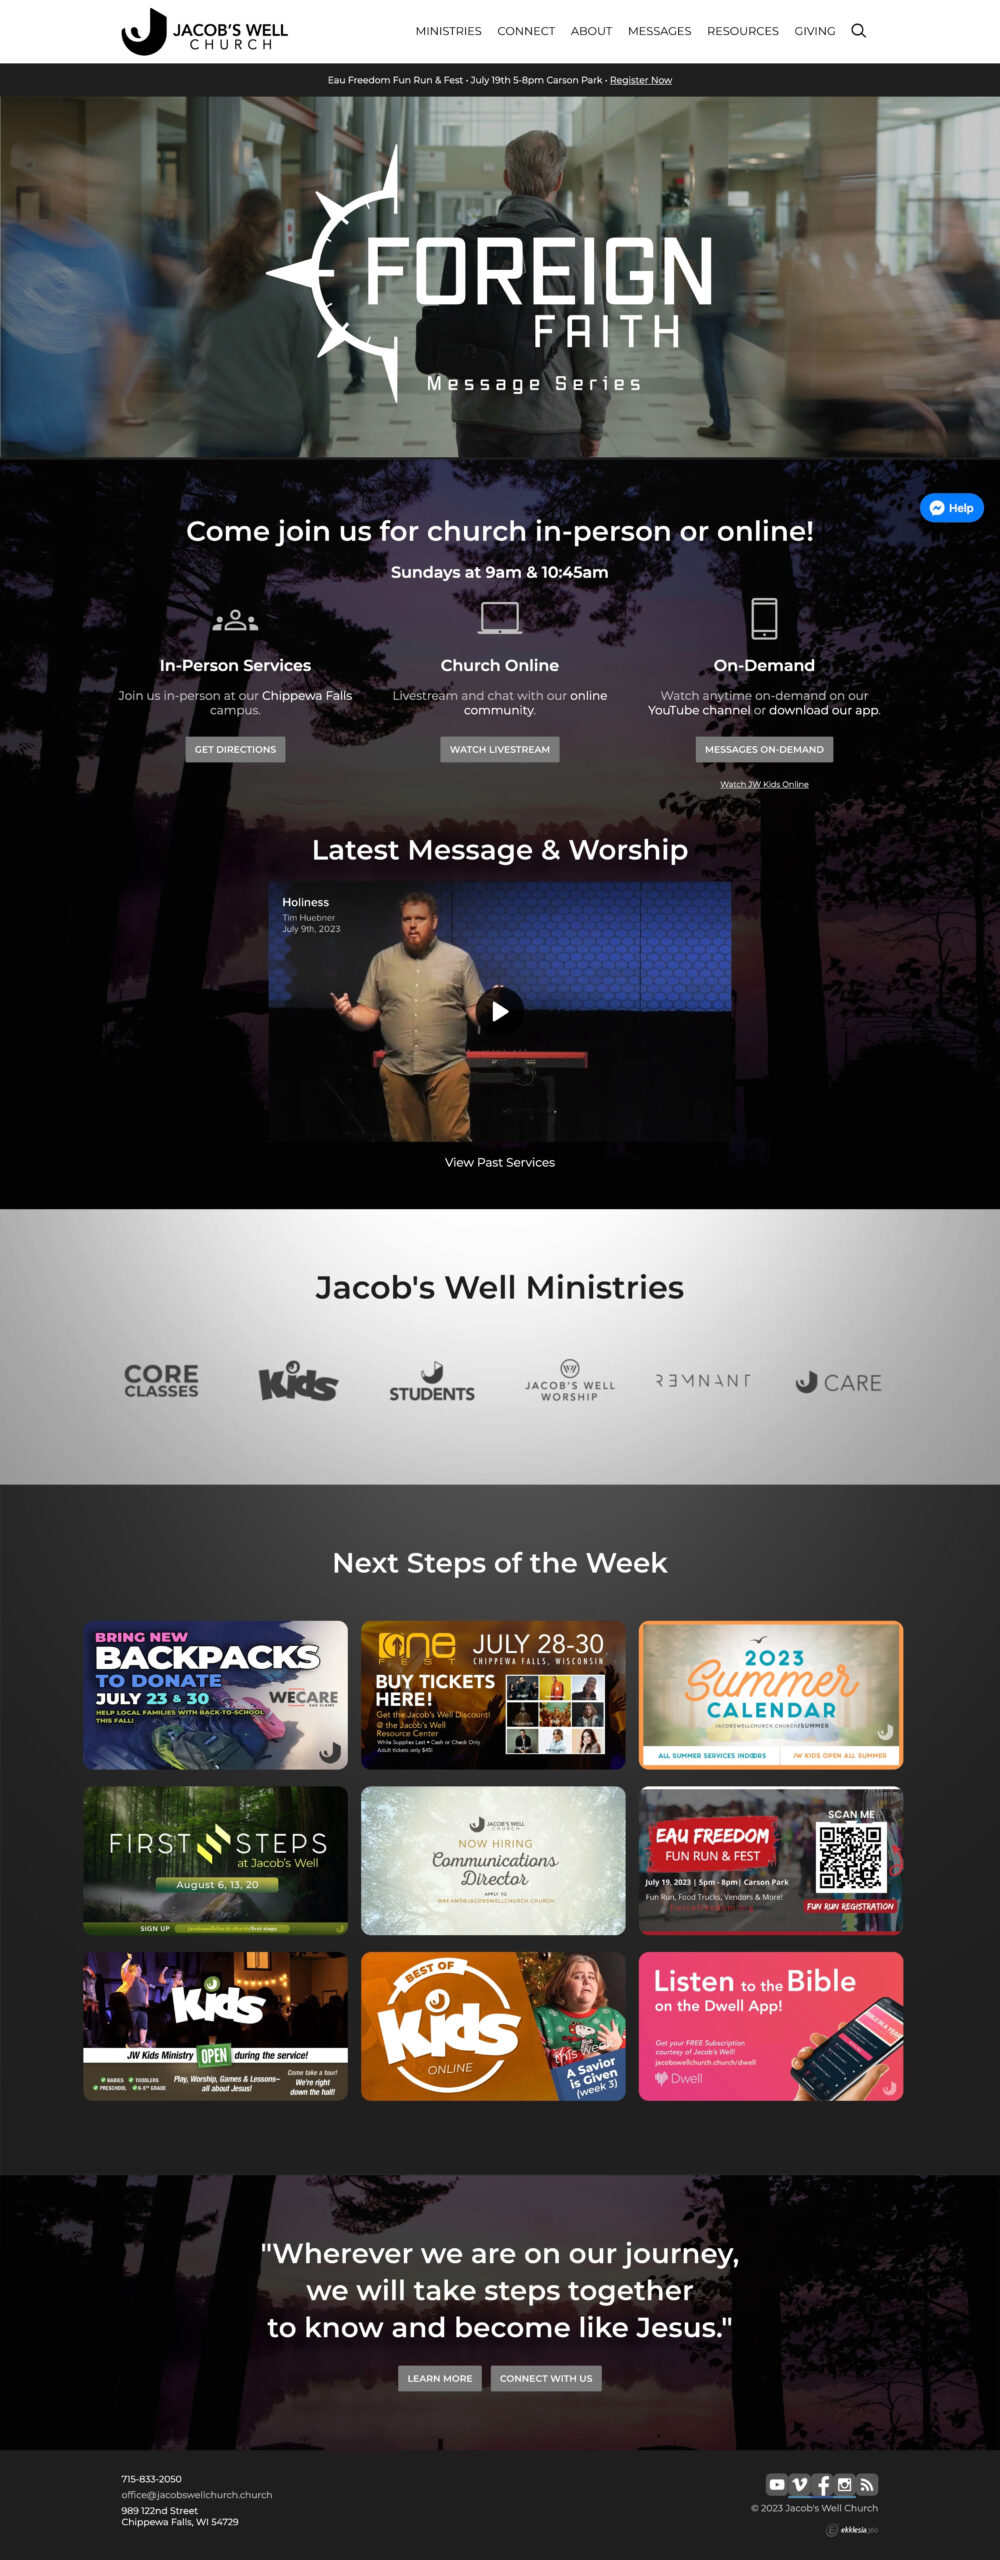 Jacob’s Well Church Website